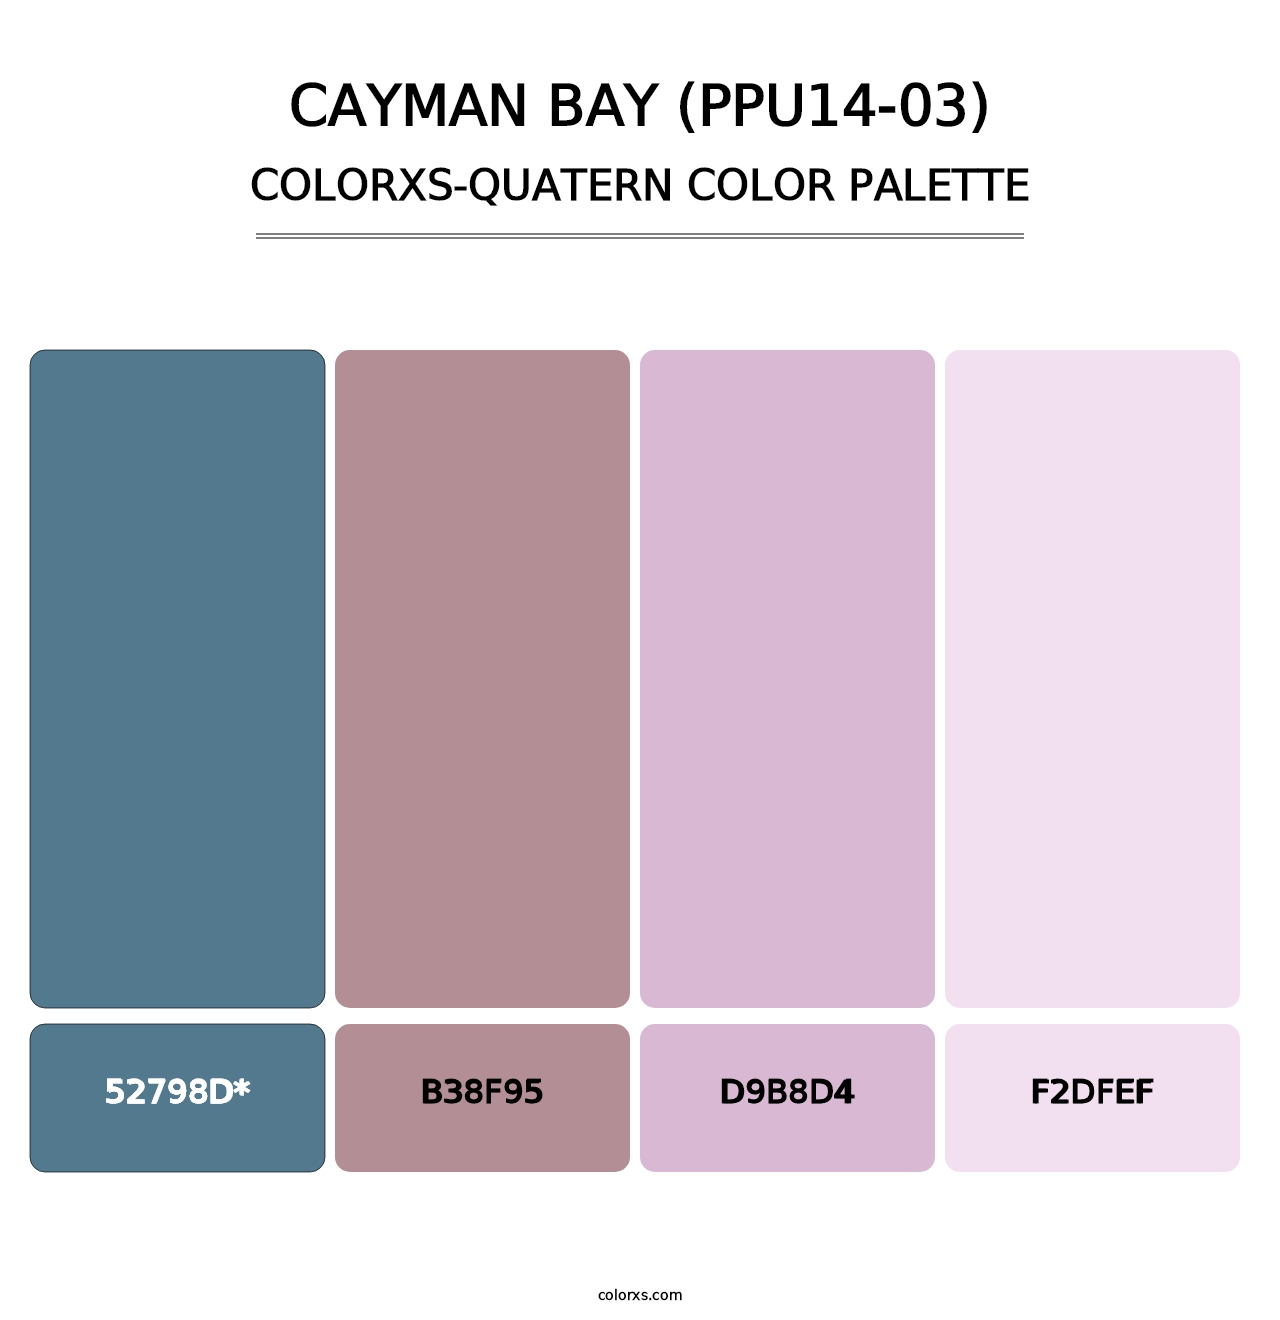 Cayman Bay (PPU14-03) - Colorxs Quad Palette